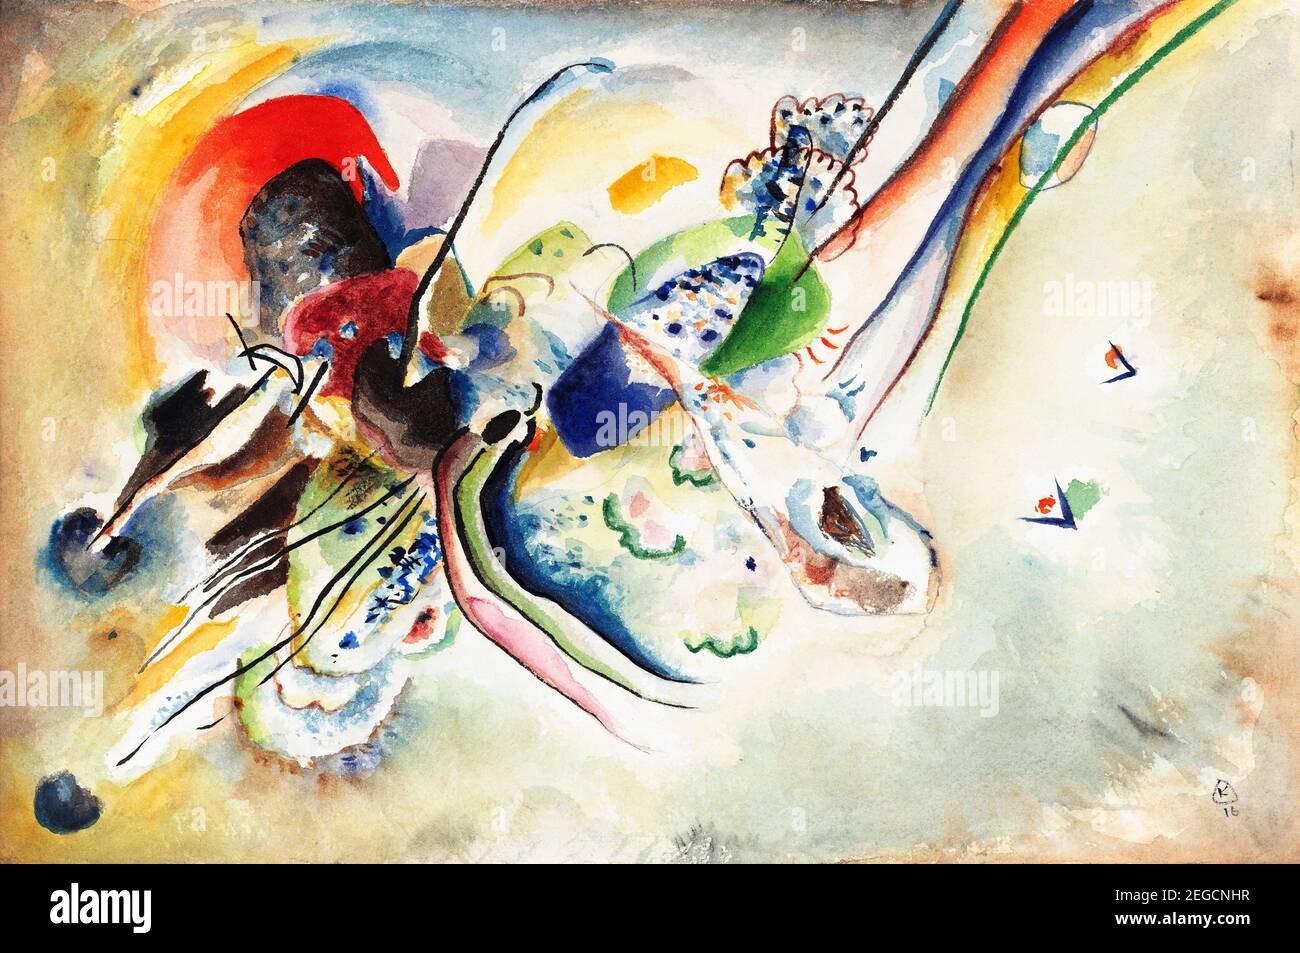 Pittura di Kandinsky. Composizione (Studio per 'Bild mit zwei roten Flecken') di Wassily Kandinsky (1866-1944), acquerello e matita su carta, 1916 Foto Stock